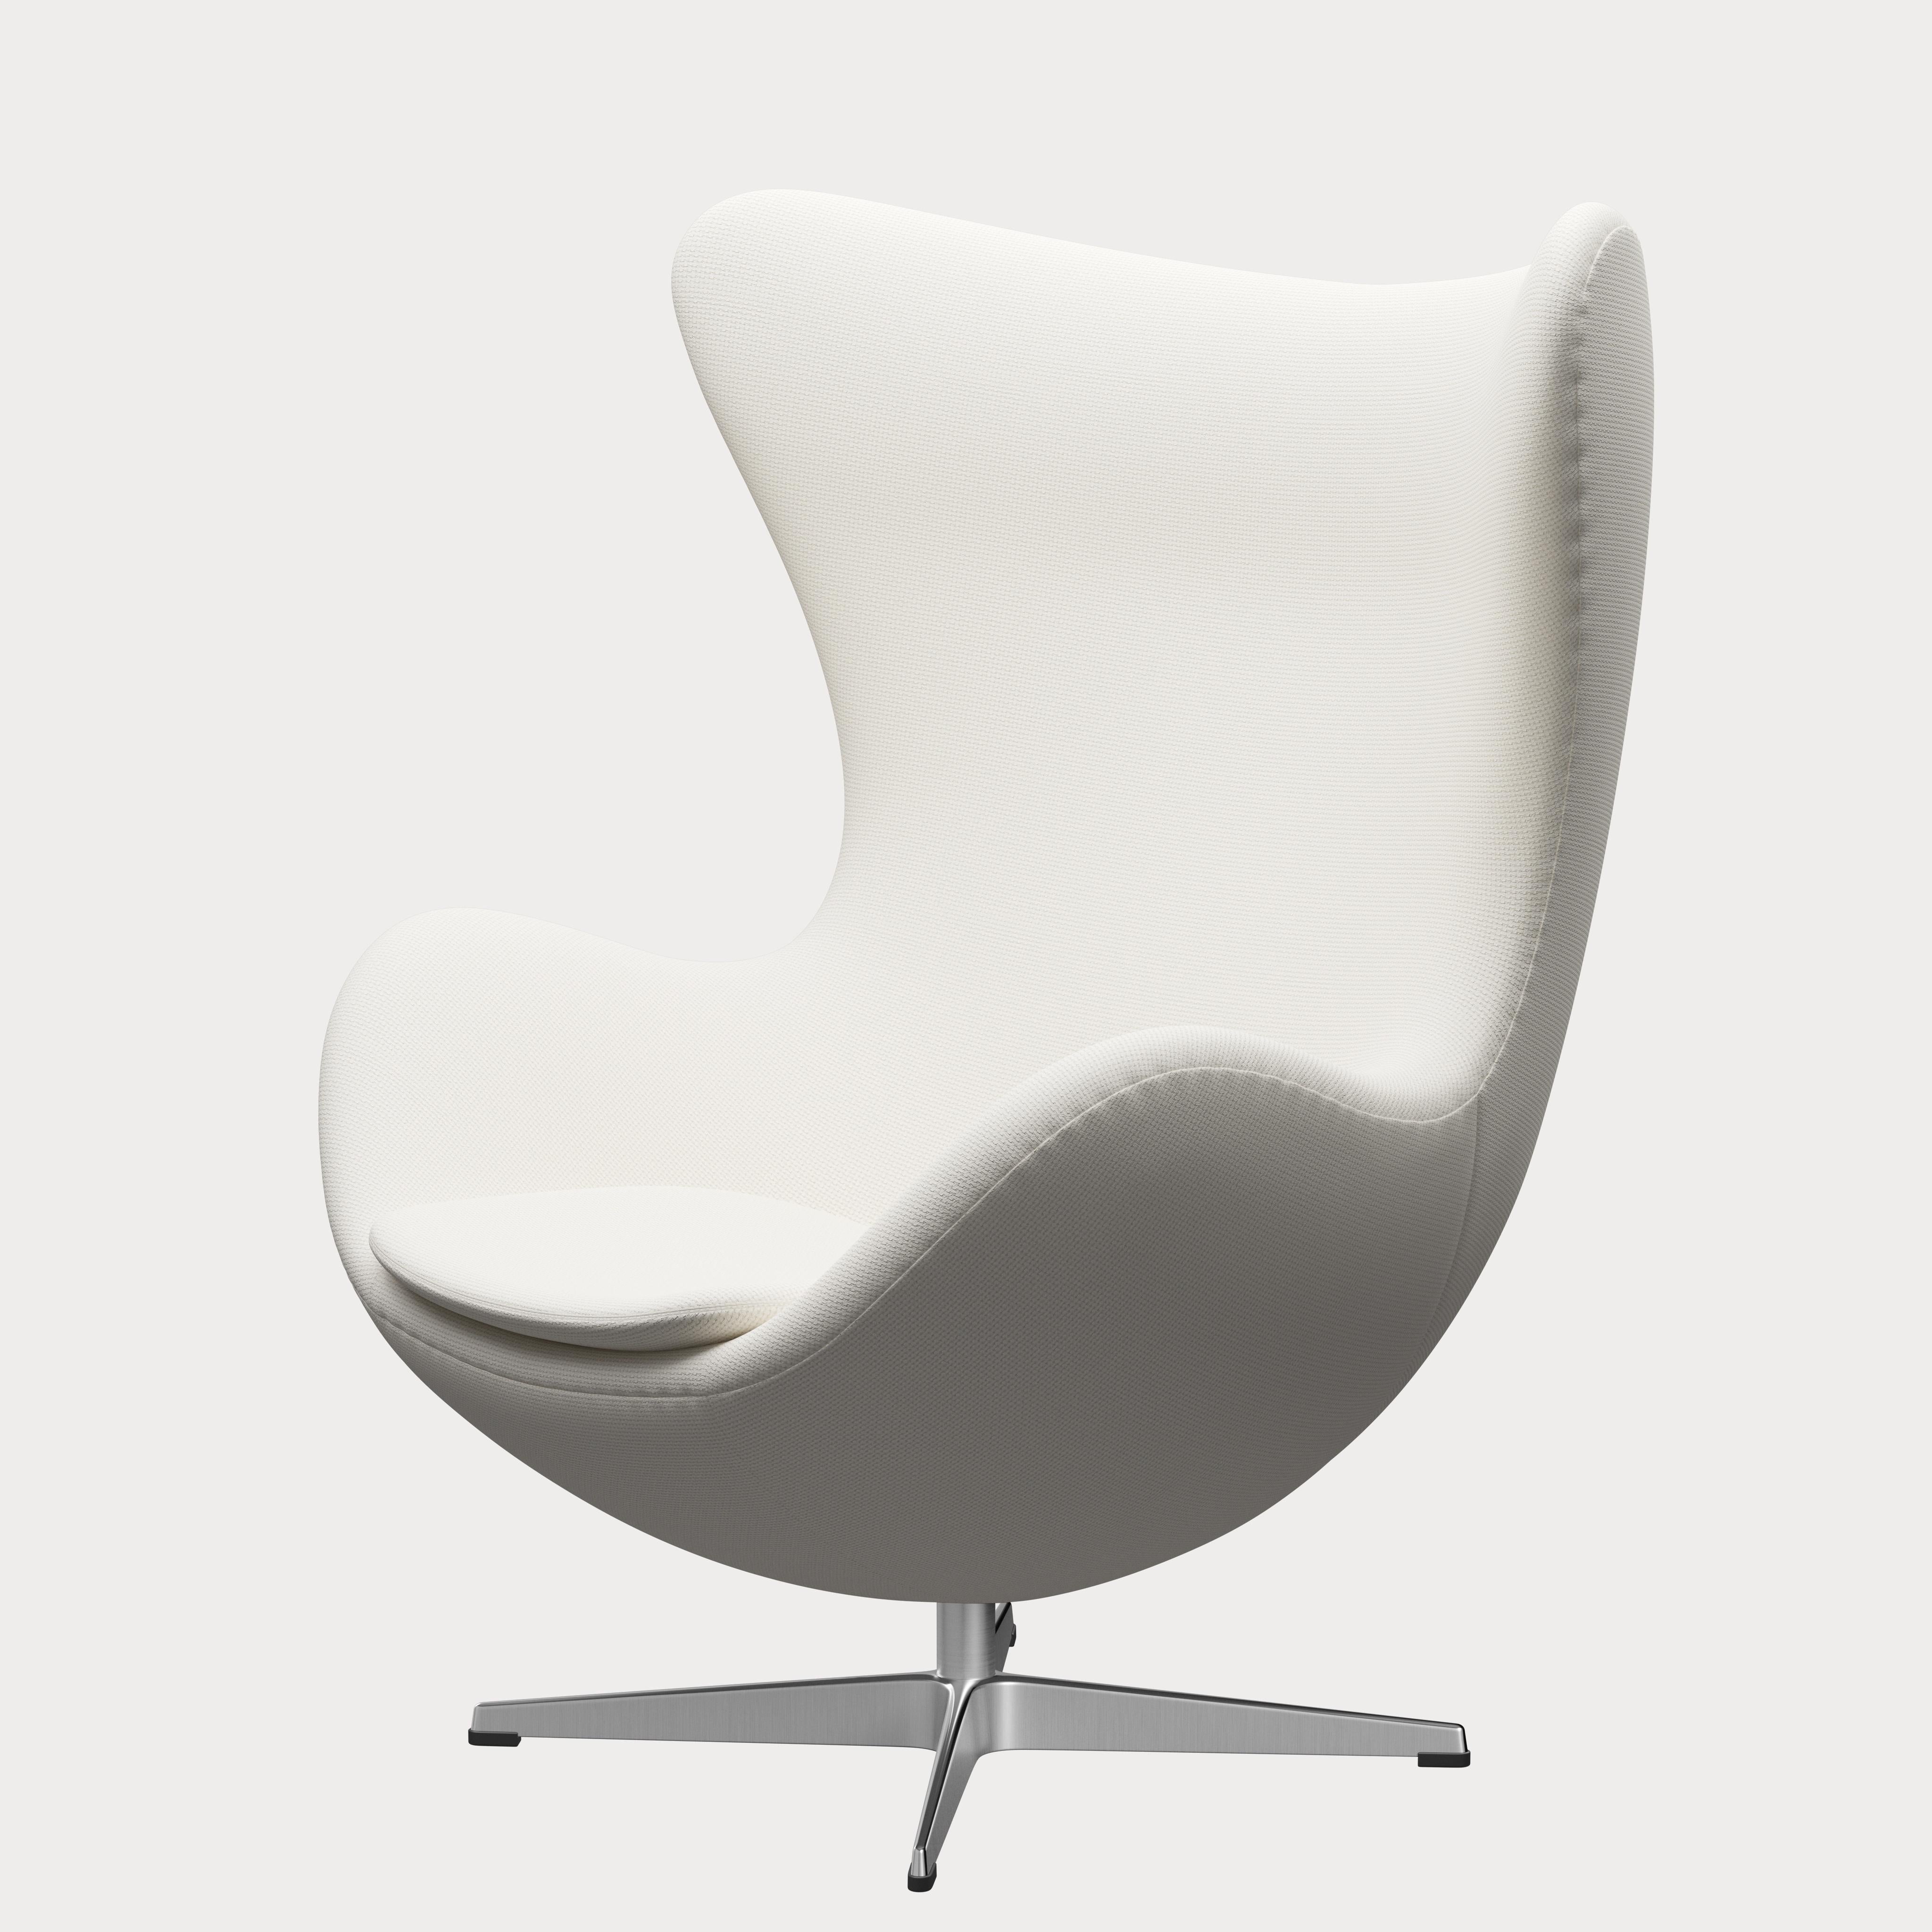 Scandinavian Modern Arne Jacobsen 'Egg' Chair for Fritz Hansen in Fabric Upholstery (Cat. 1) For Sale